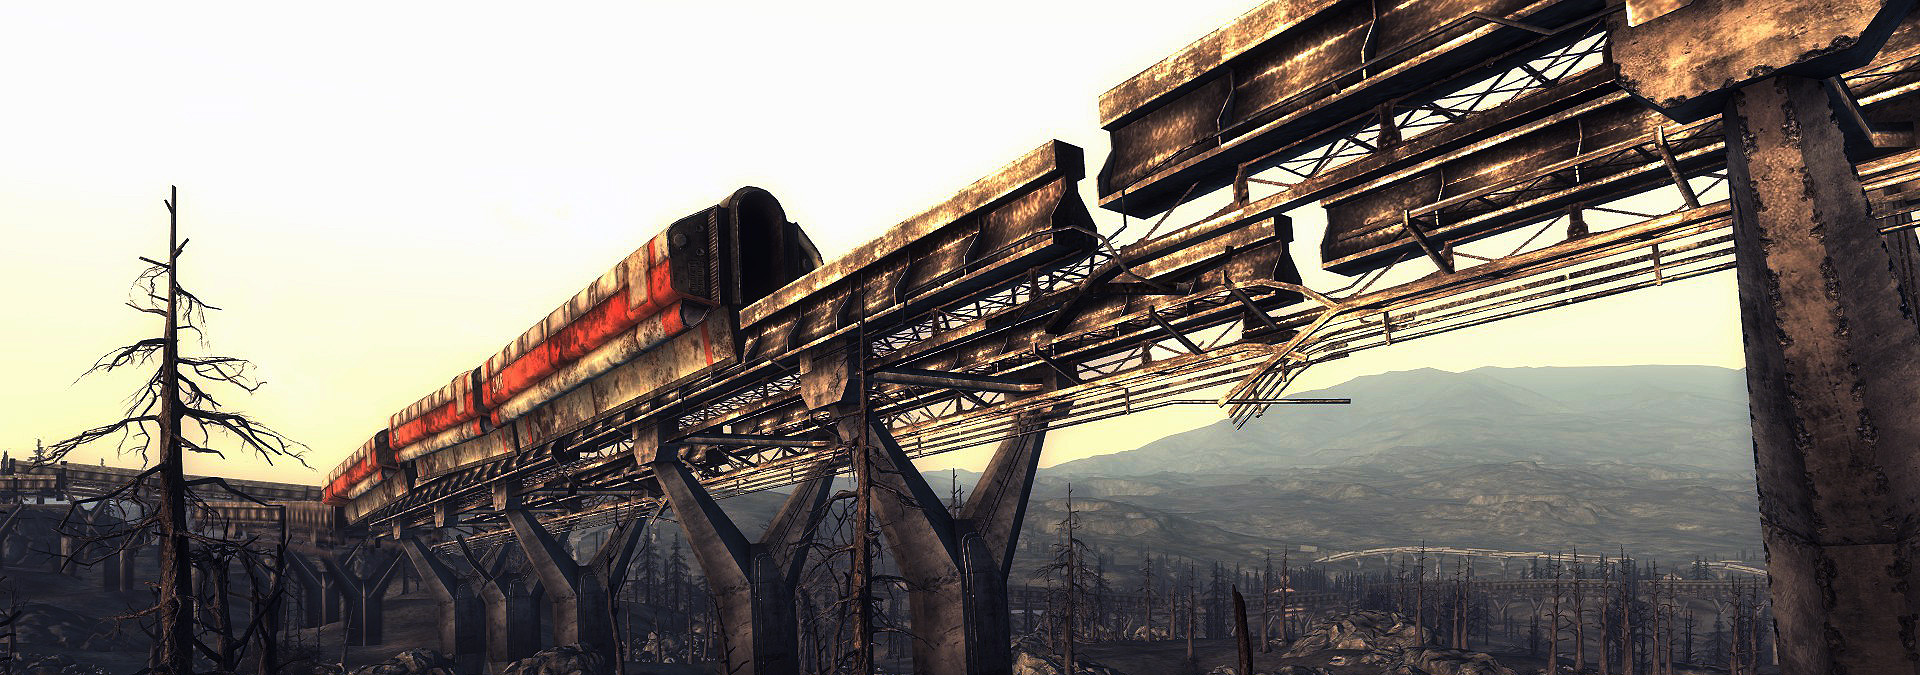 Zerstörte Railroad